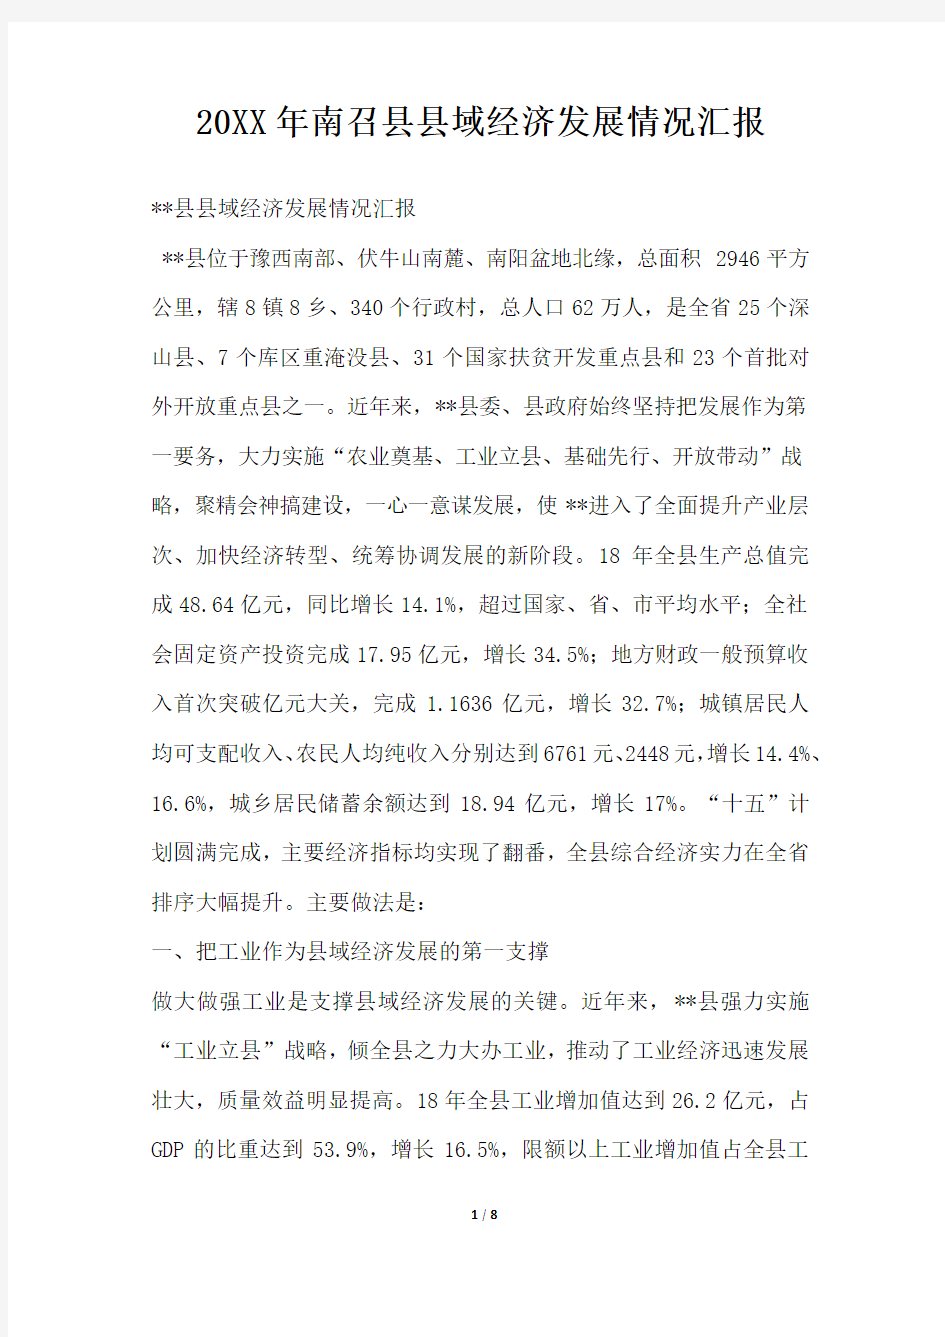 2019年南召县县域经济发展情况汇报